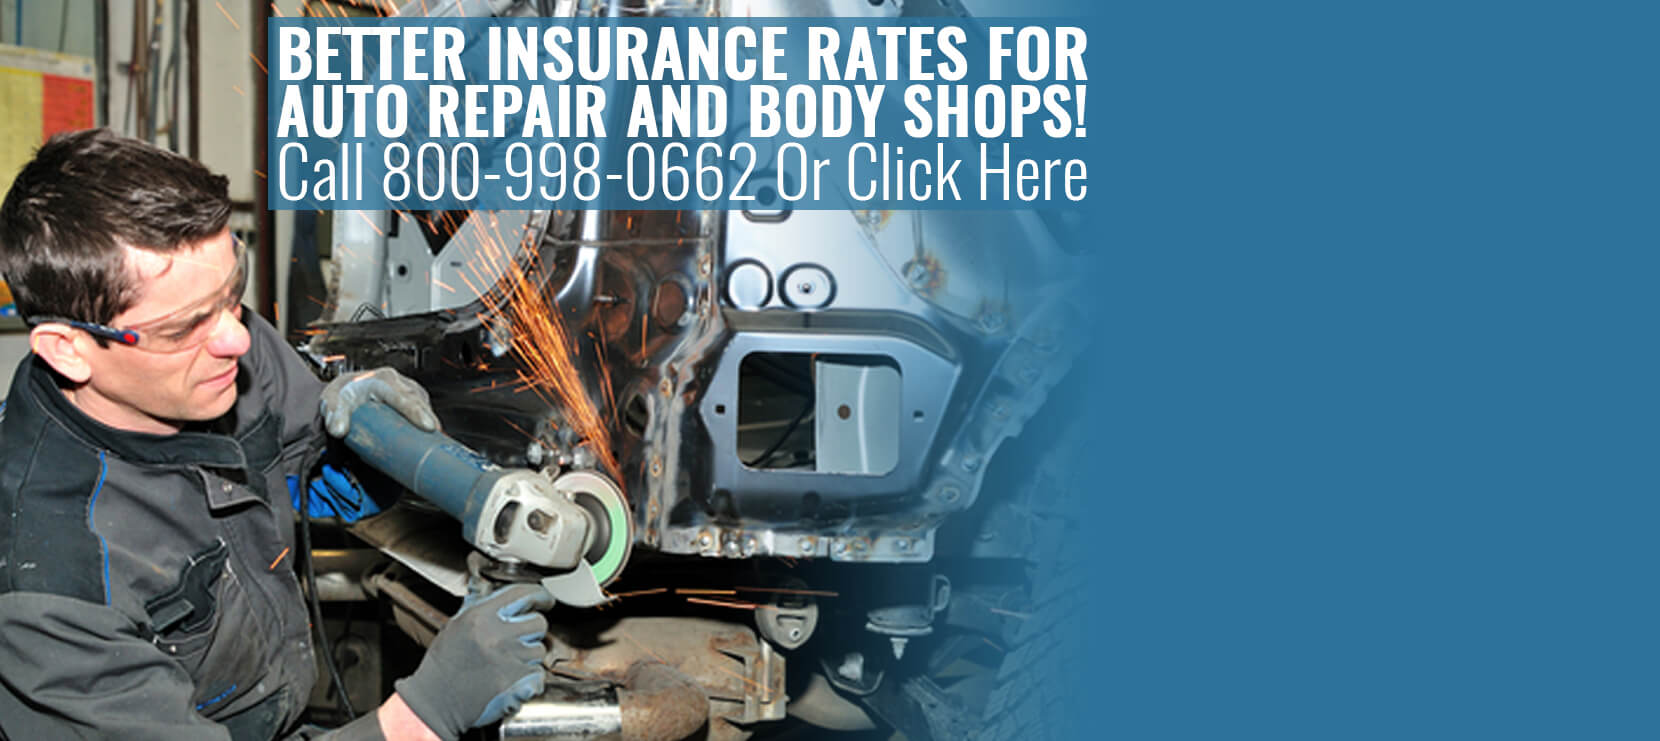 Auto Repair Insurance Ohio